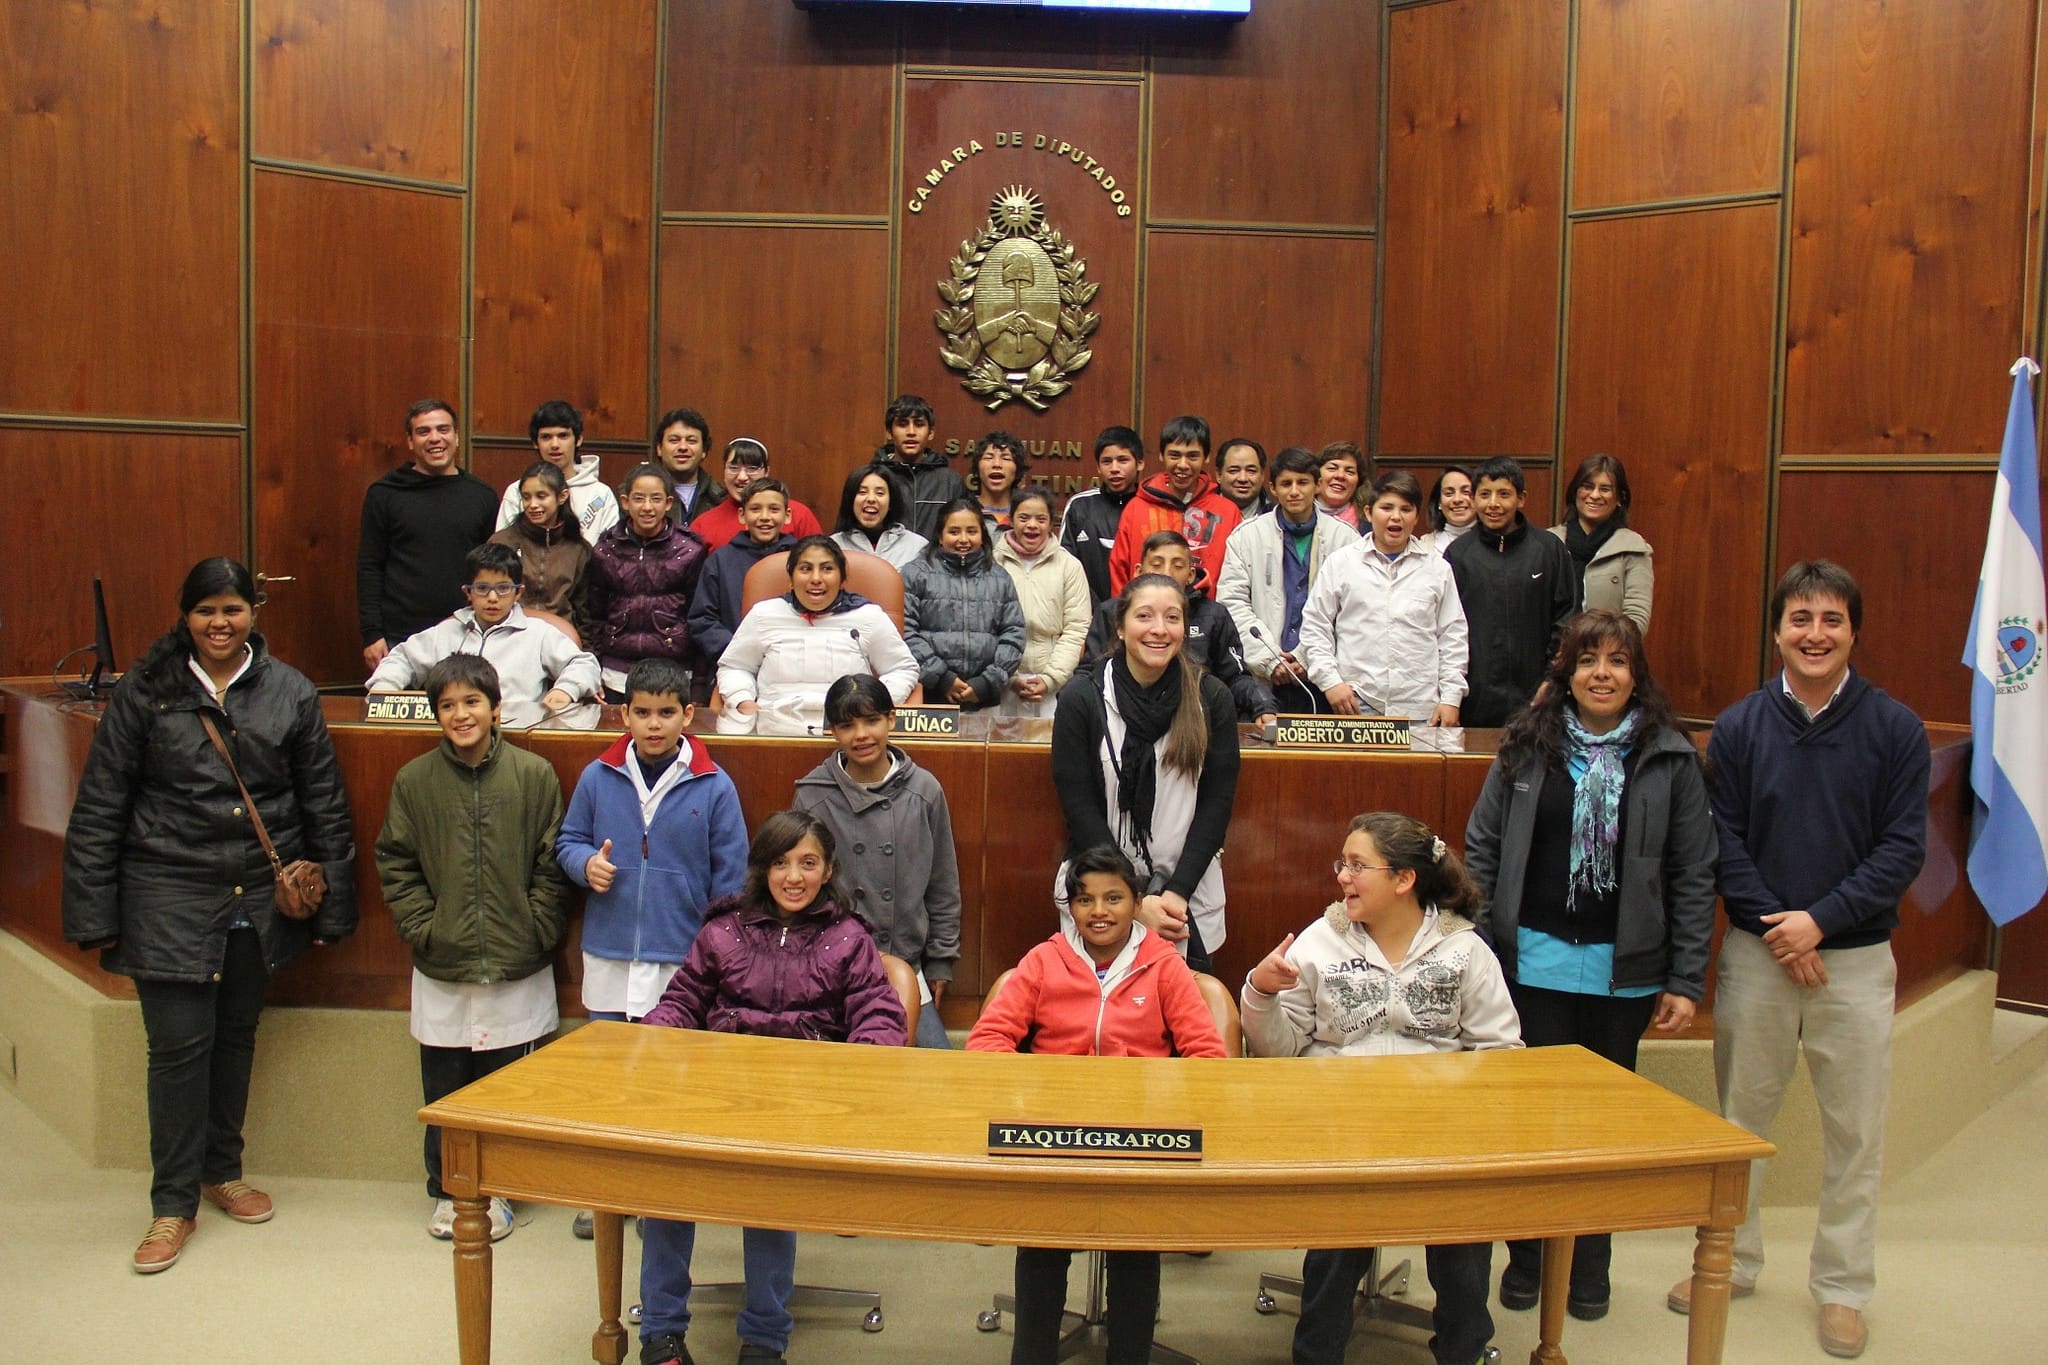 Los alumnos de Rivadavia conocieron el Recinto de Sesiones de la Cámara de Diputados.